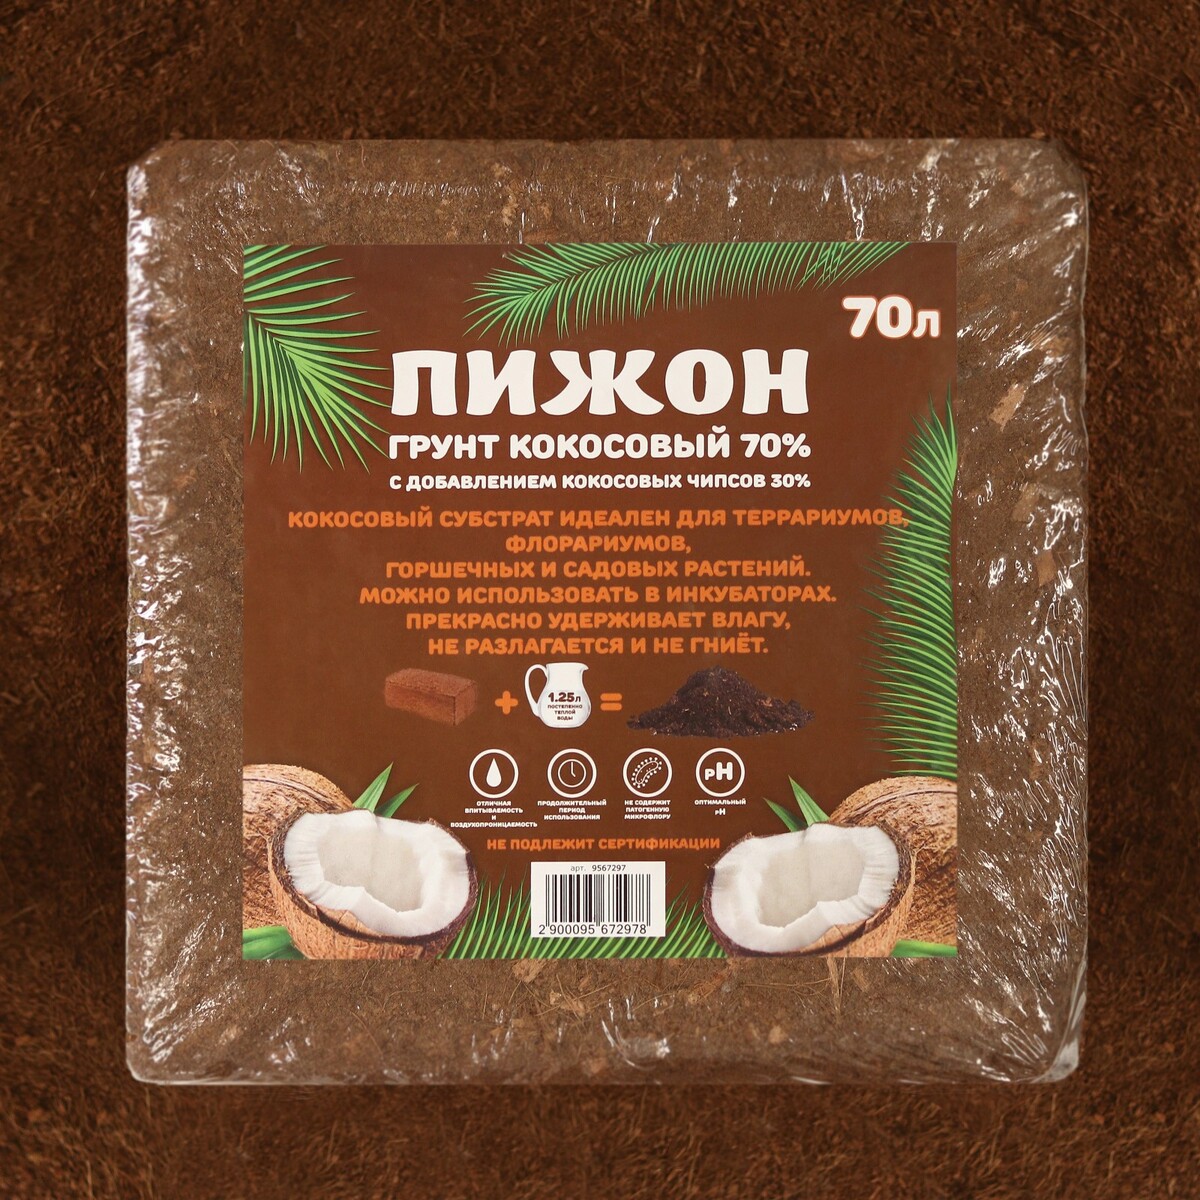 Грунт кокосовый пижон (70%), 70 л, 5 кг Пижон, цвет коричневый 06412342 - фото 3